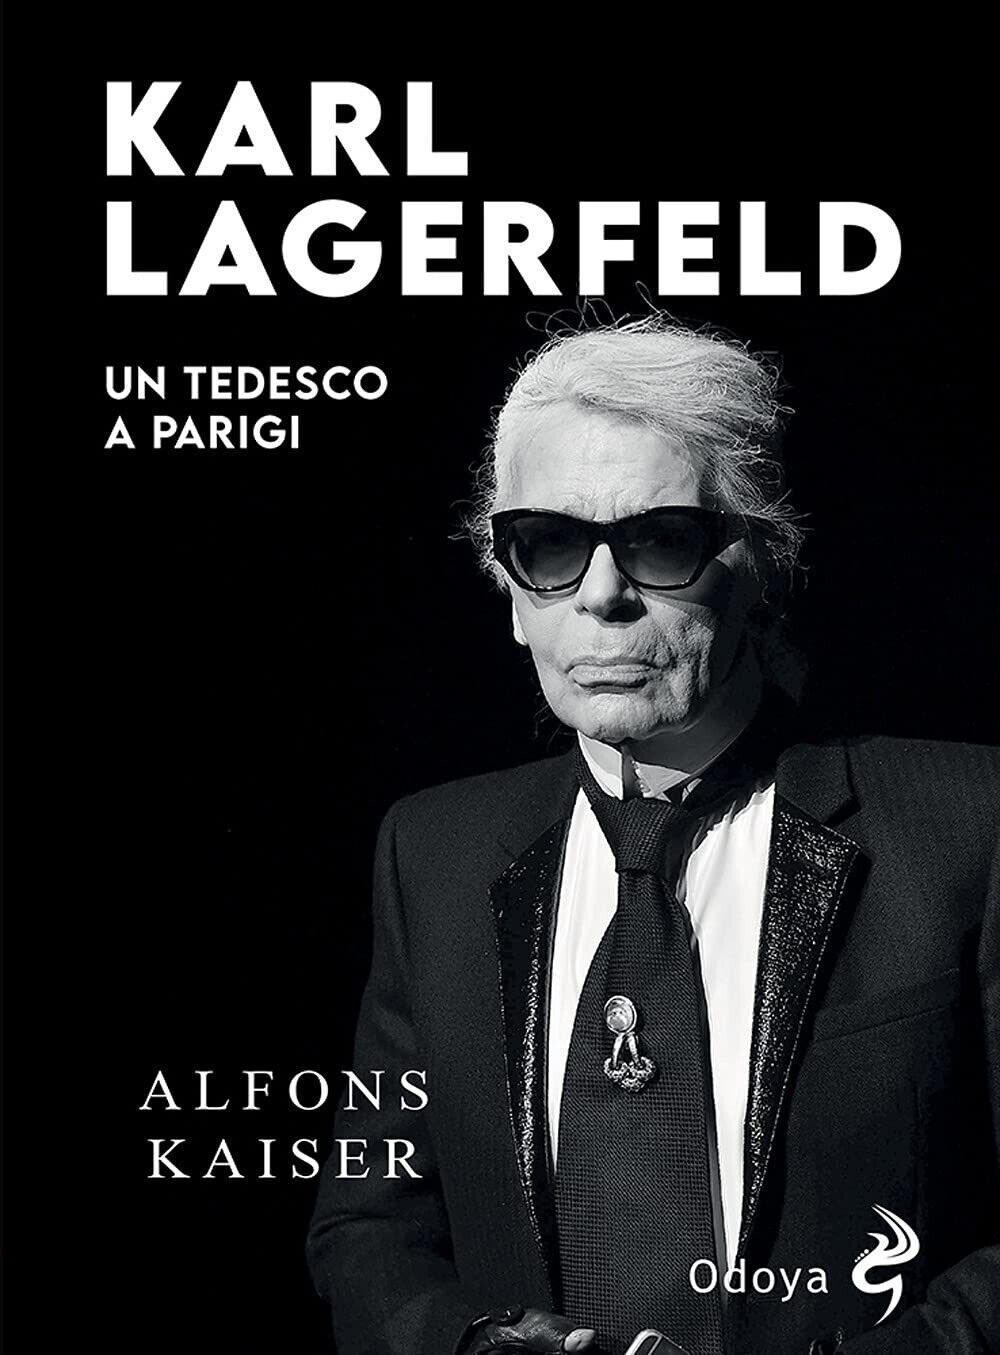 Karl Lagerfeld. Un tedesco a Parigi - Alfons Kaiser - Odoya, 2021 libro usato